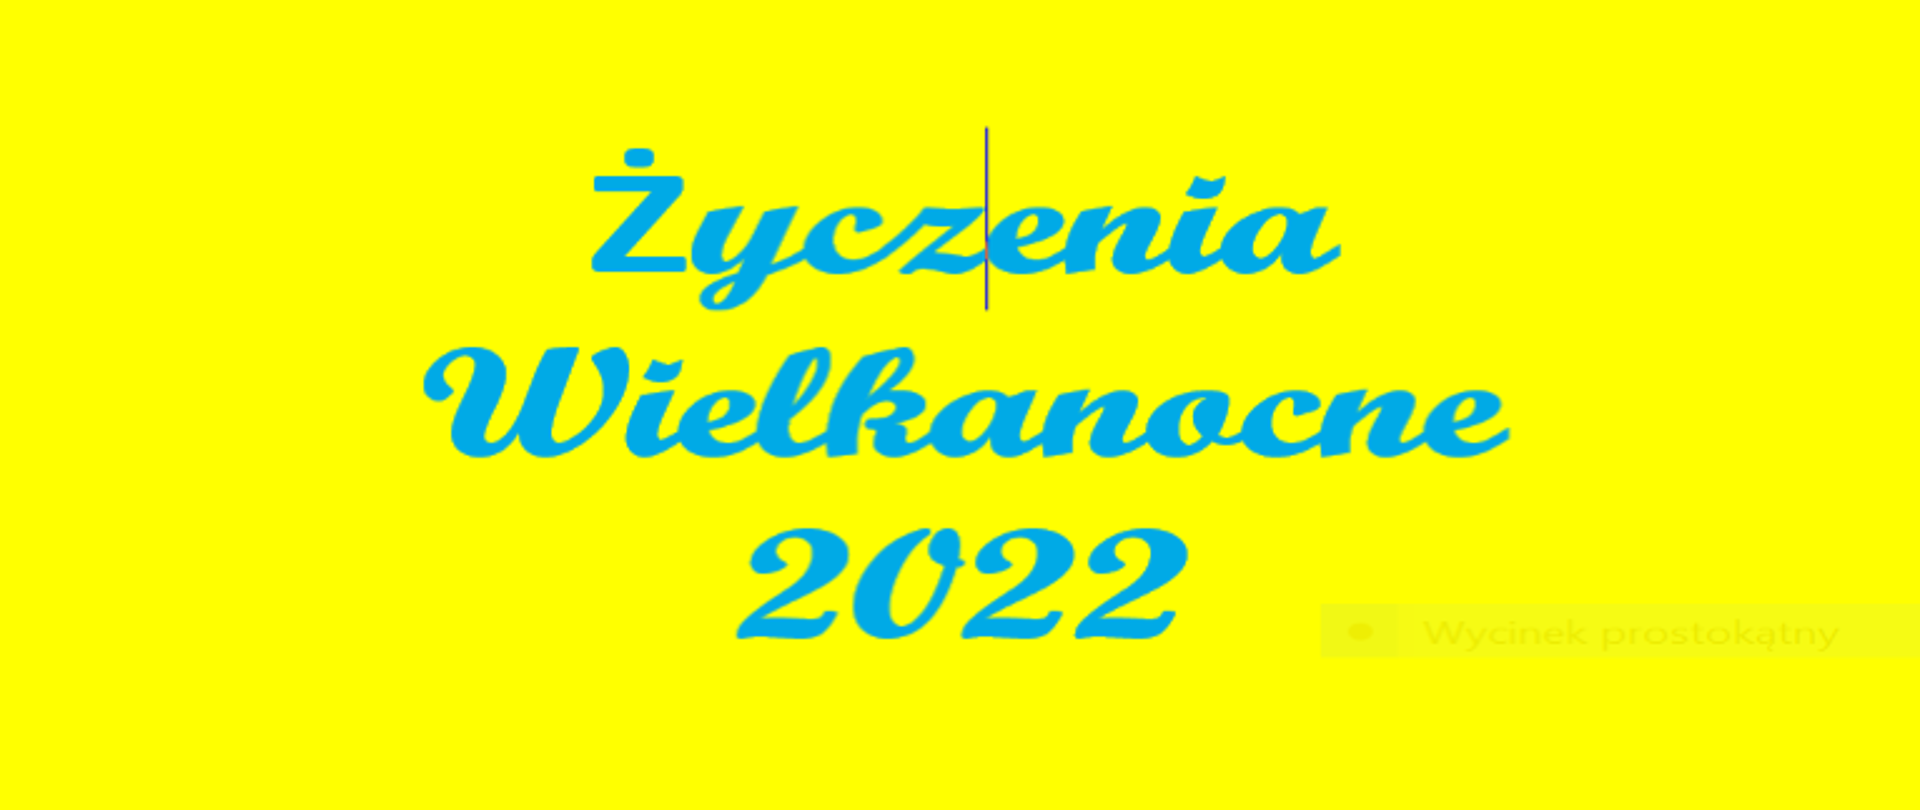 Na żółtym tle niebieski napis Życzenia Wielkanocne 2022